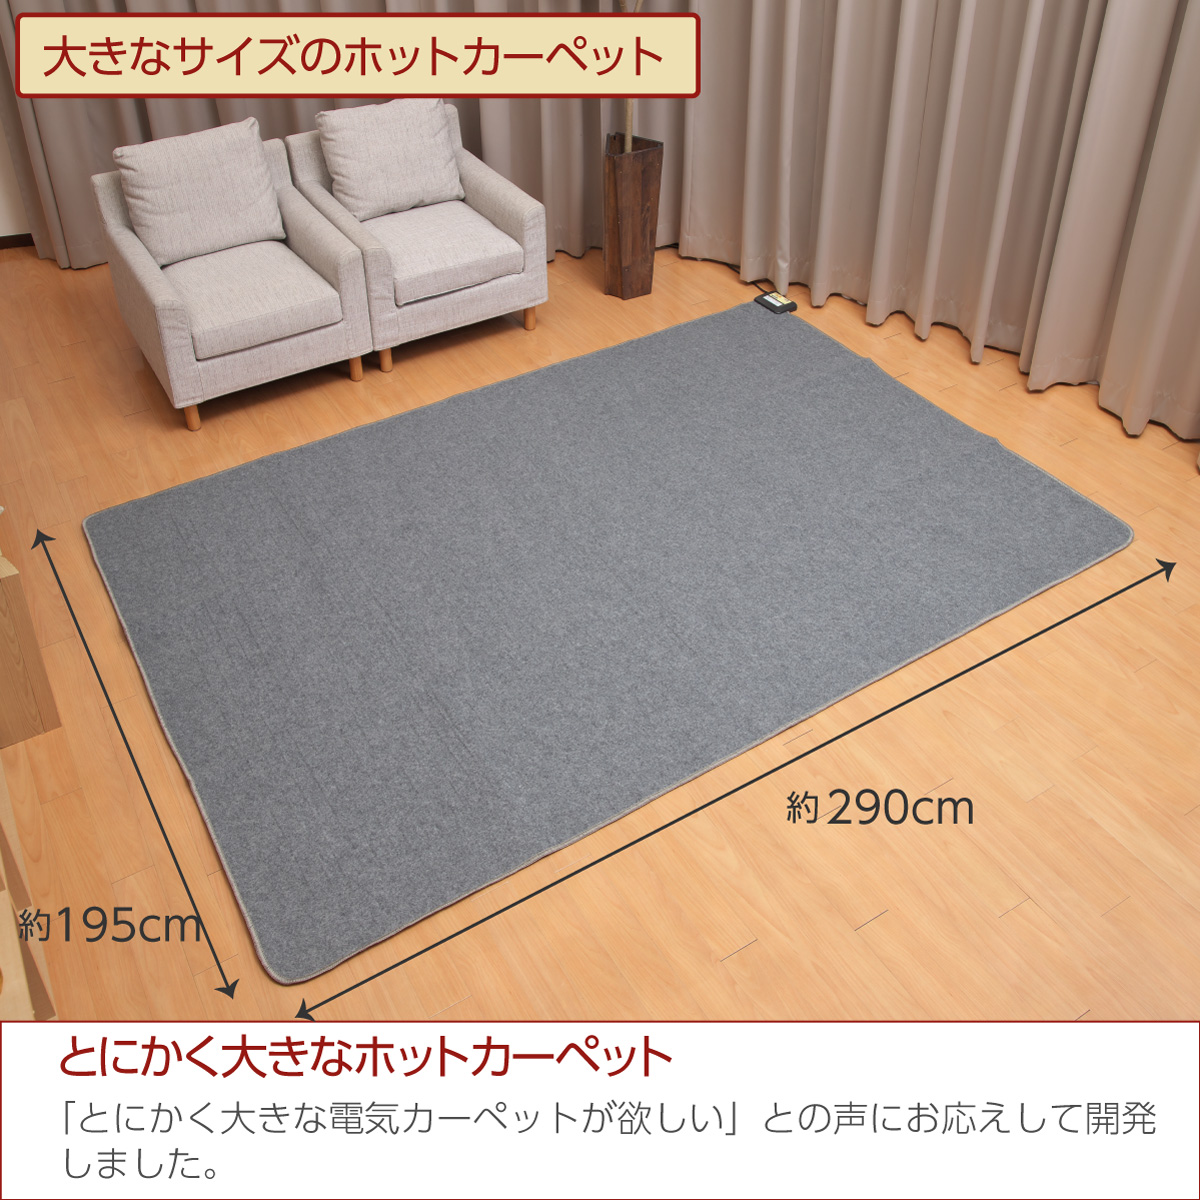 日本製 ホットカーペット 電気カーペット 4畳 290cm×195cm 暖房面切換 